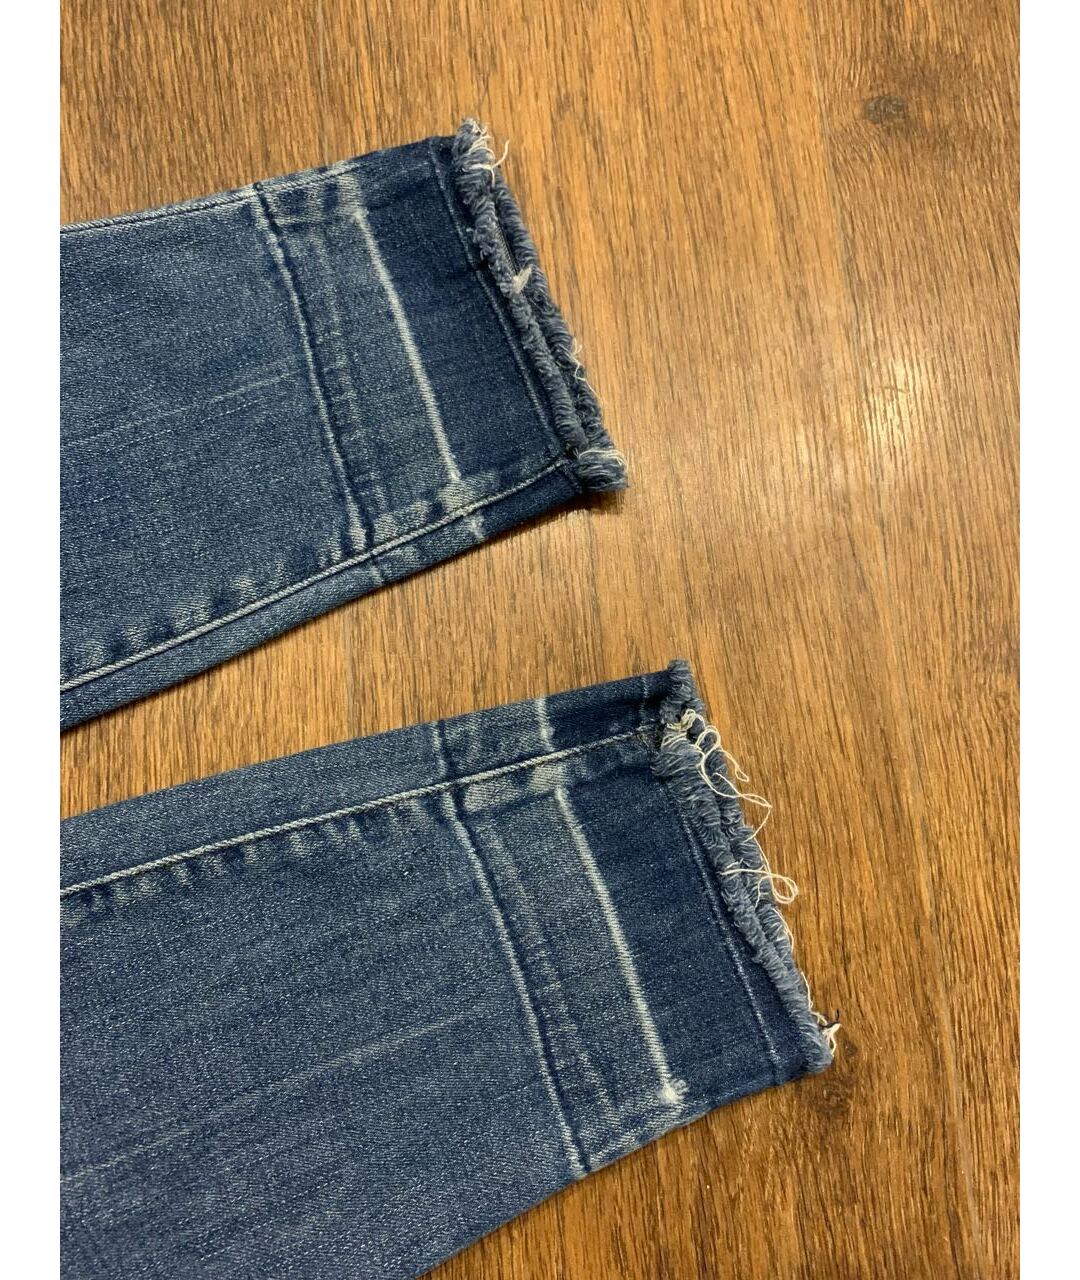 JBRAND Синие хлопко-эластановые джинсы слим, фото 3